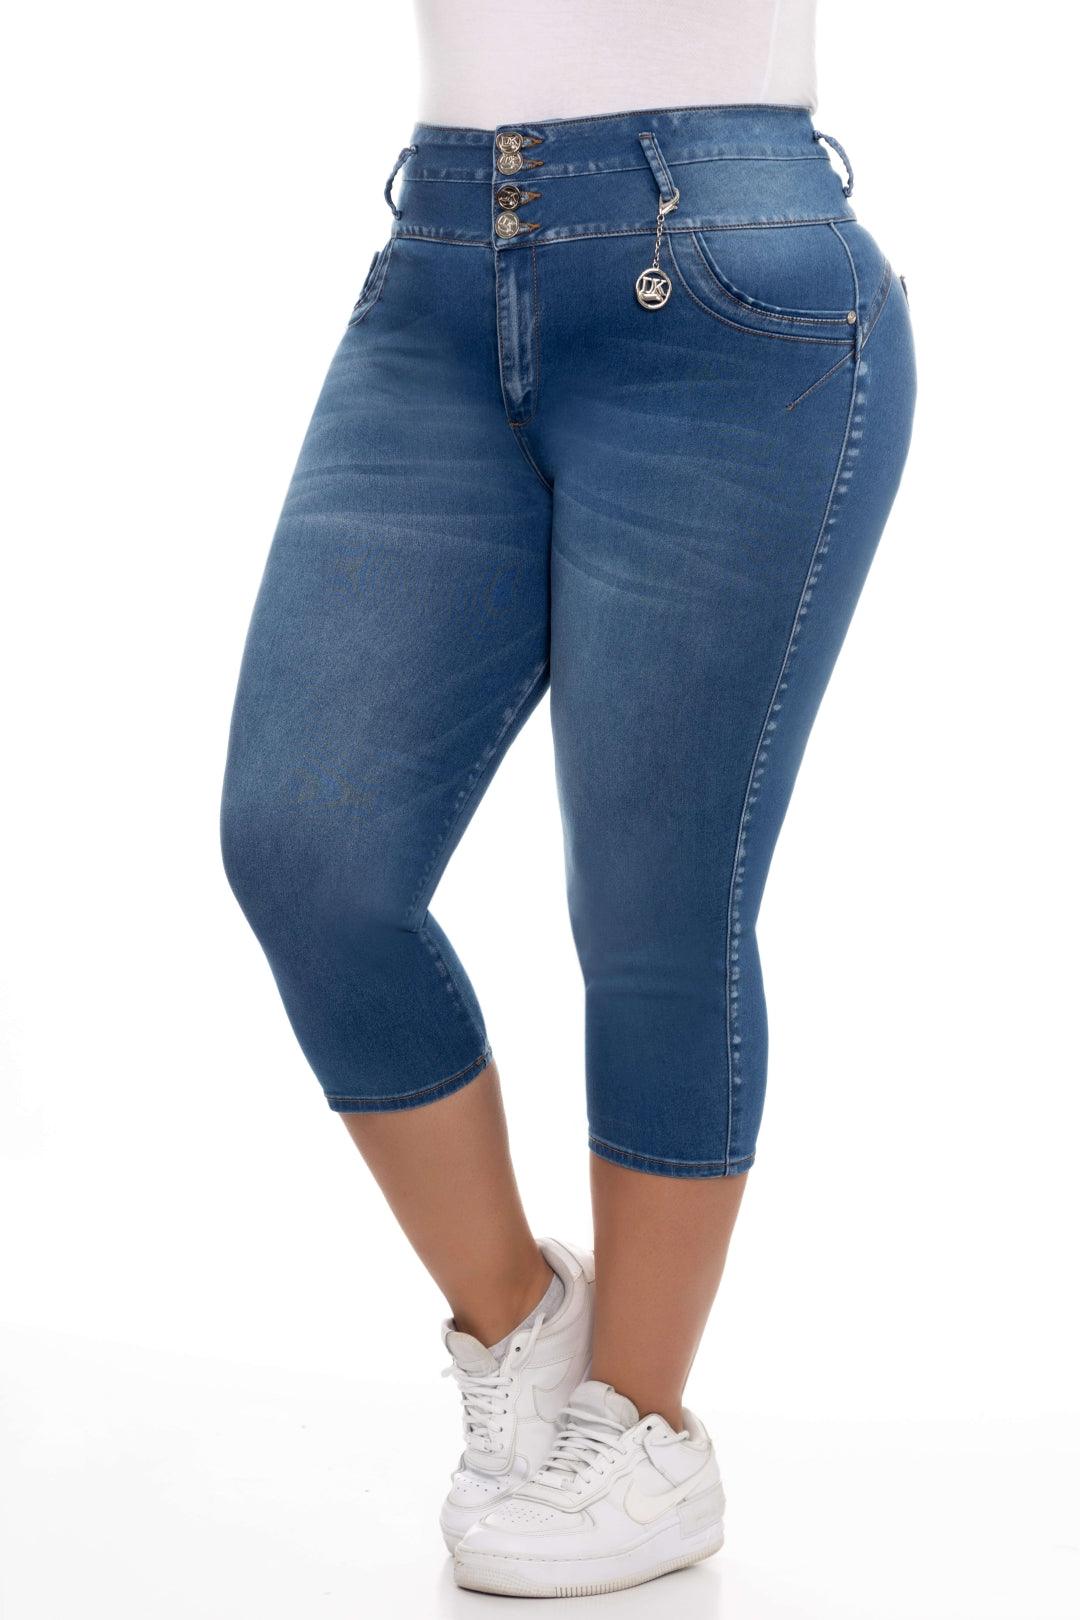 Plus Size Jeans Capri – JC Fashion